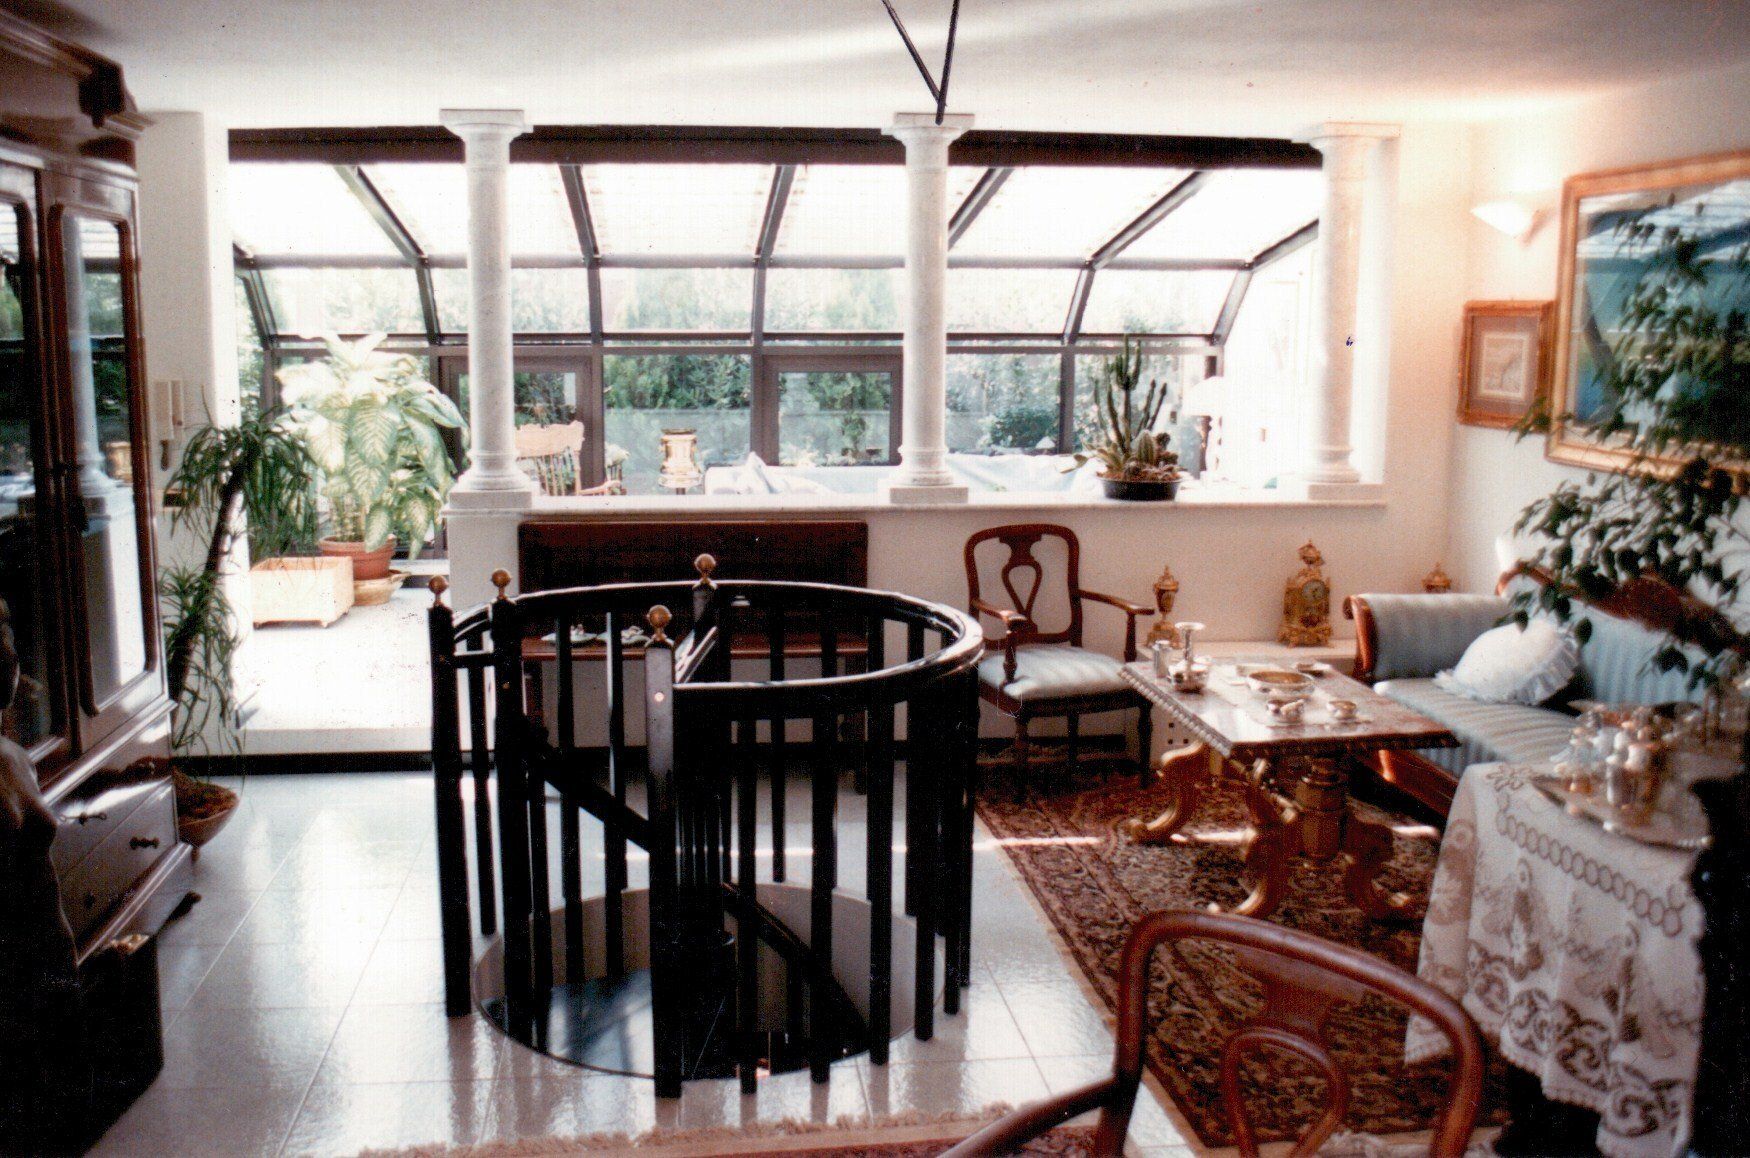 spazio esterno con veranda a vetri